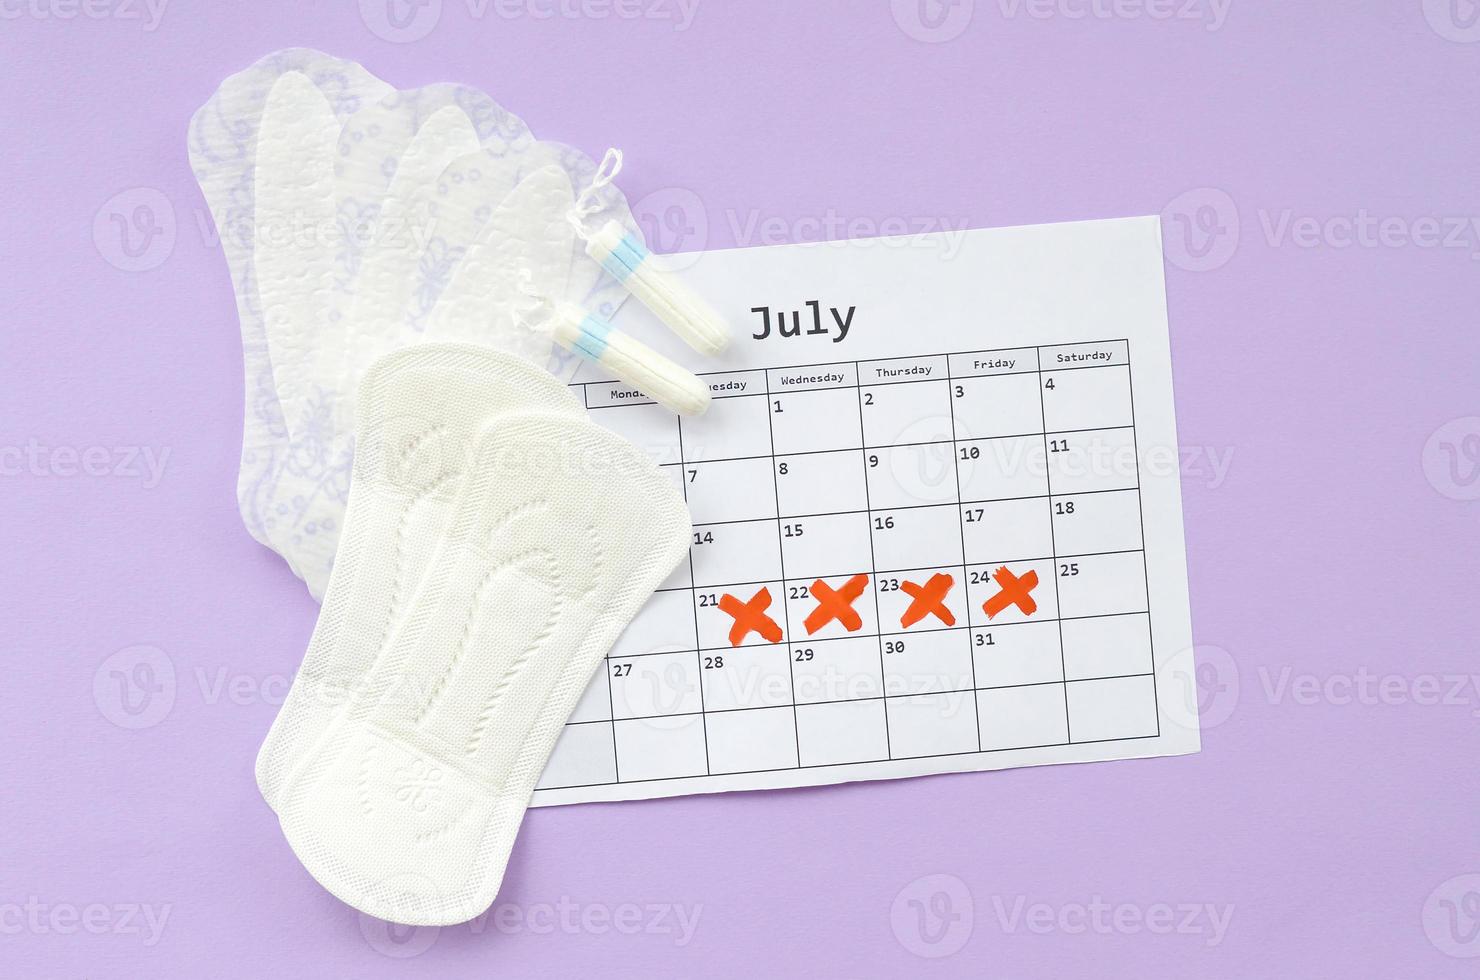 almohadillas menstruales y tampones en el calendario del período de menstruación sobre fondo lila foto